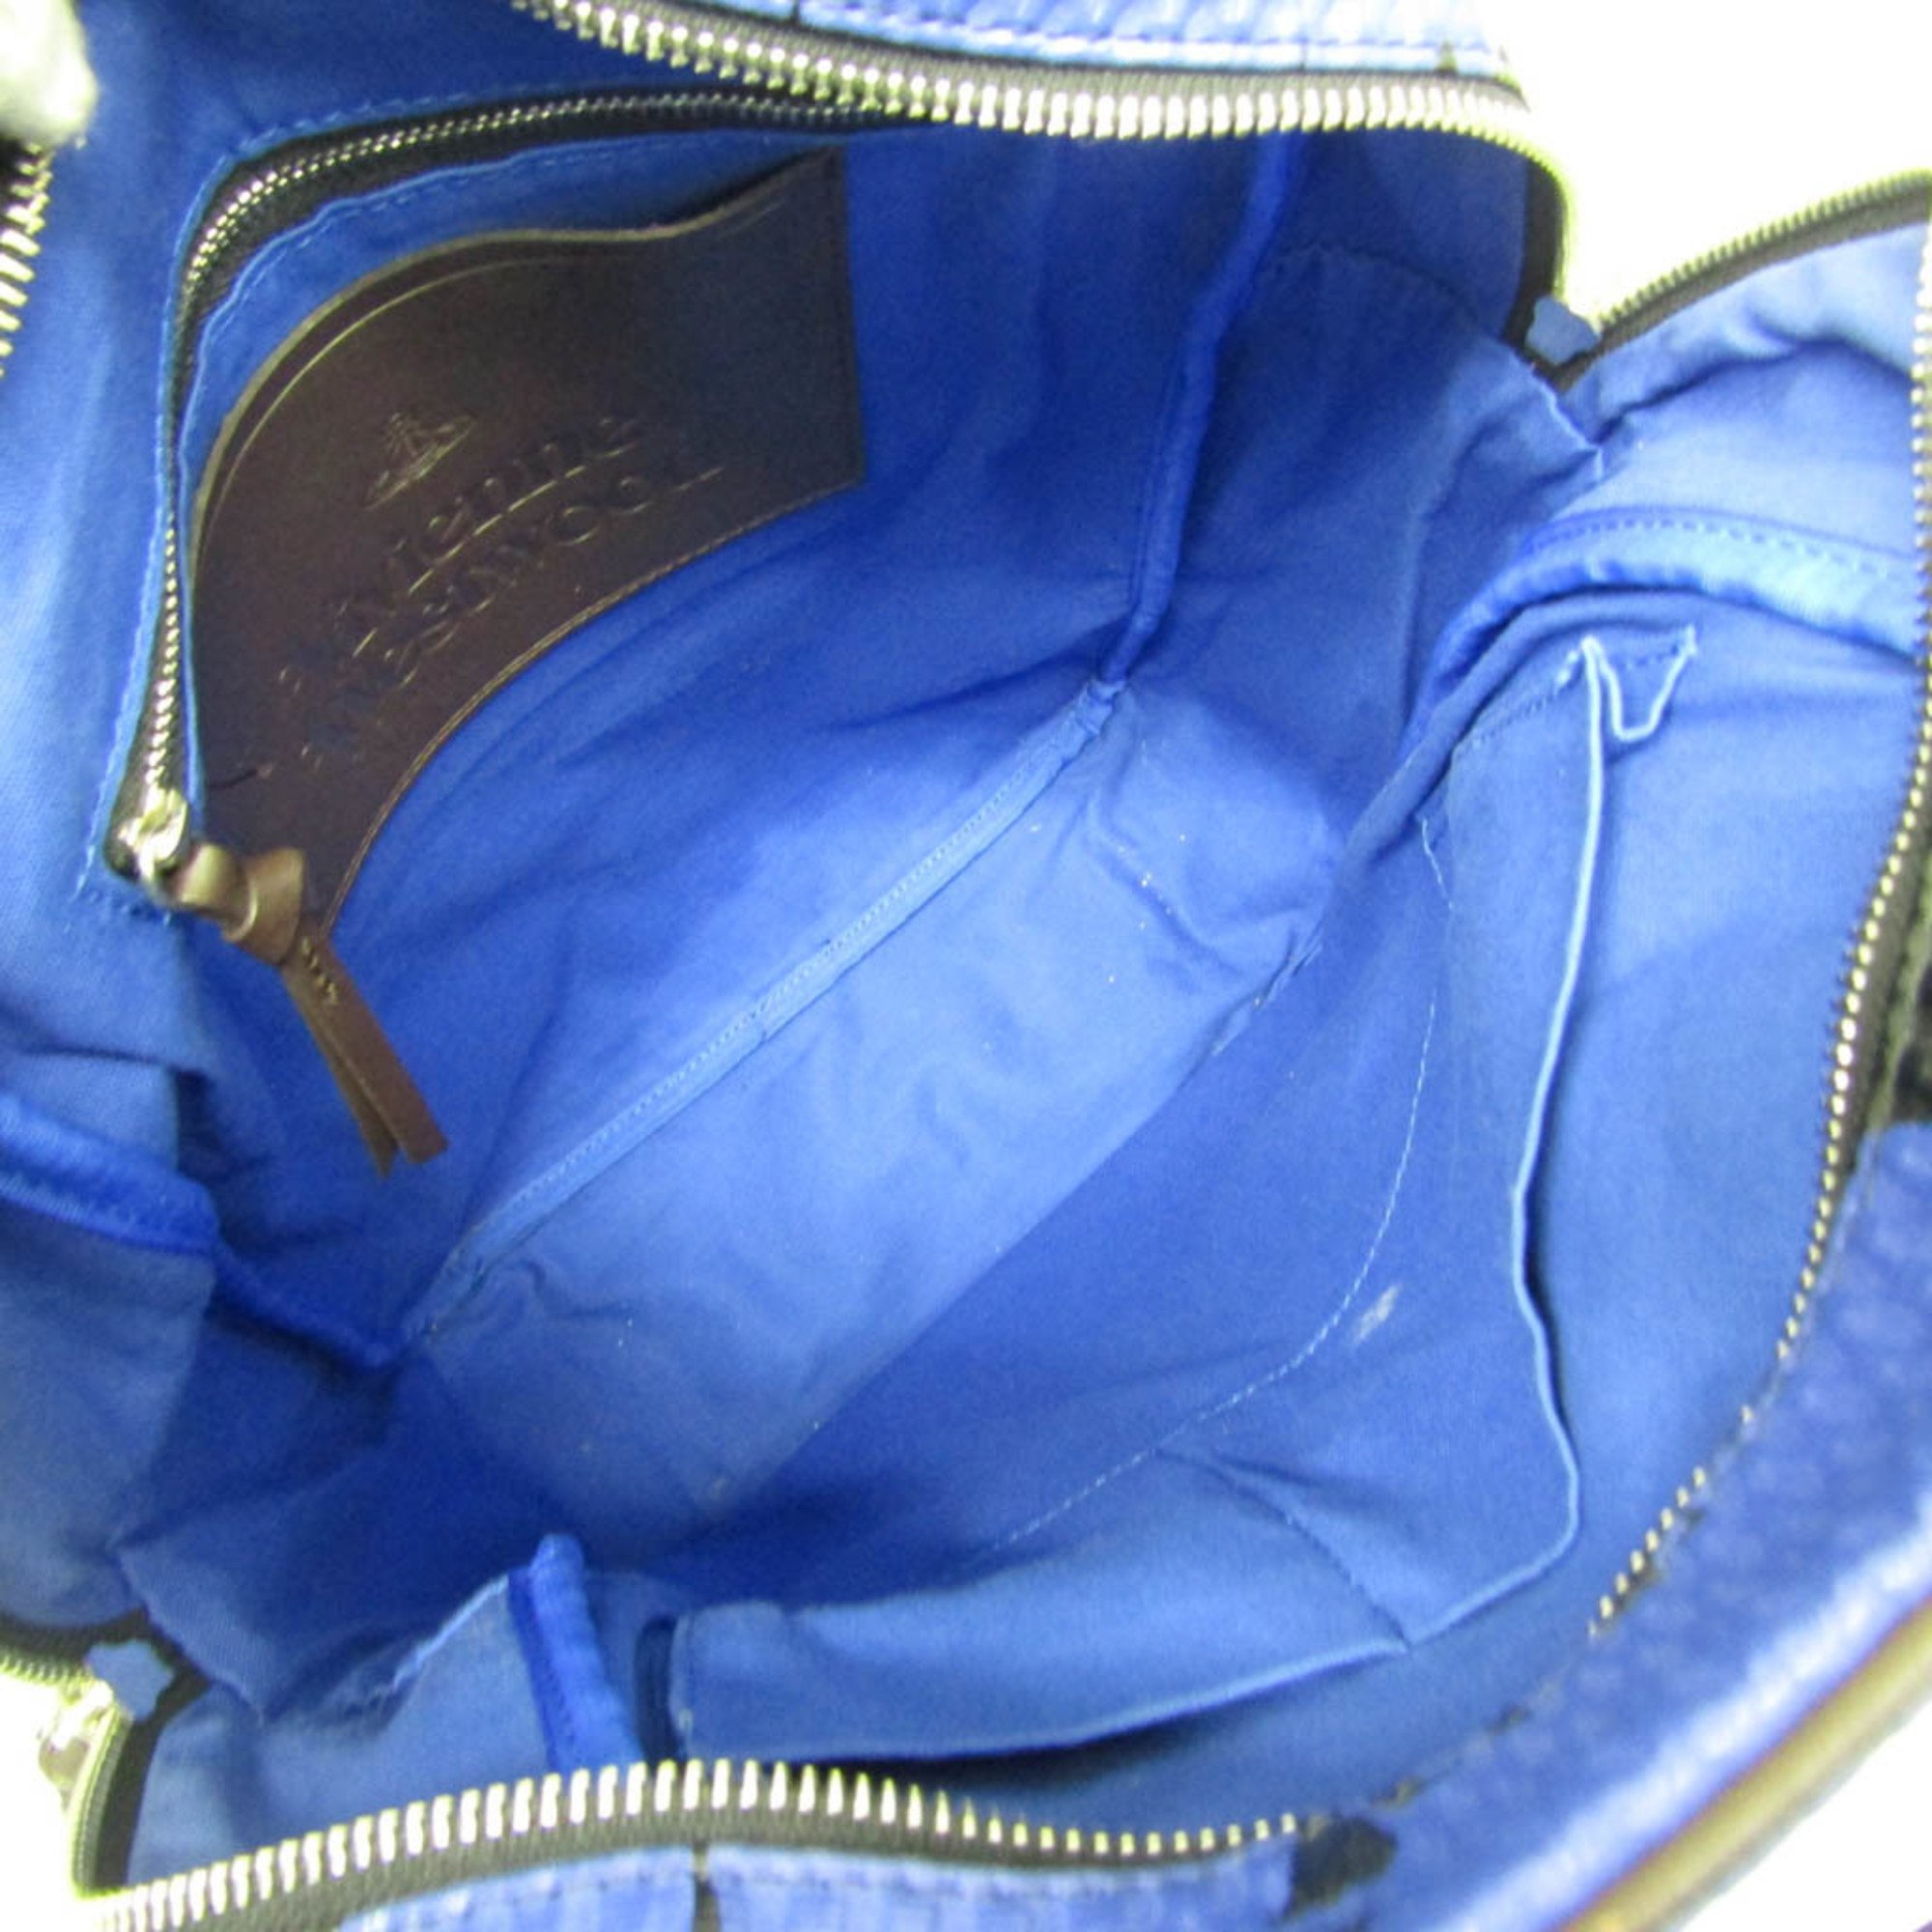 Vivienne Westwood Women,Men Leather Backpack Black,Blue,Dark Brown